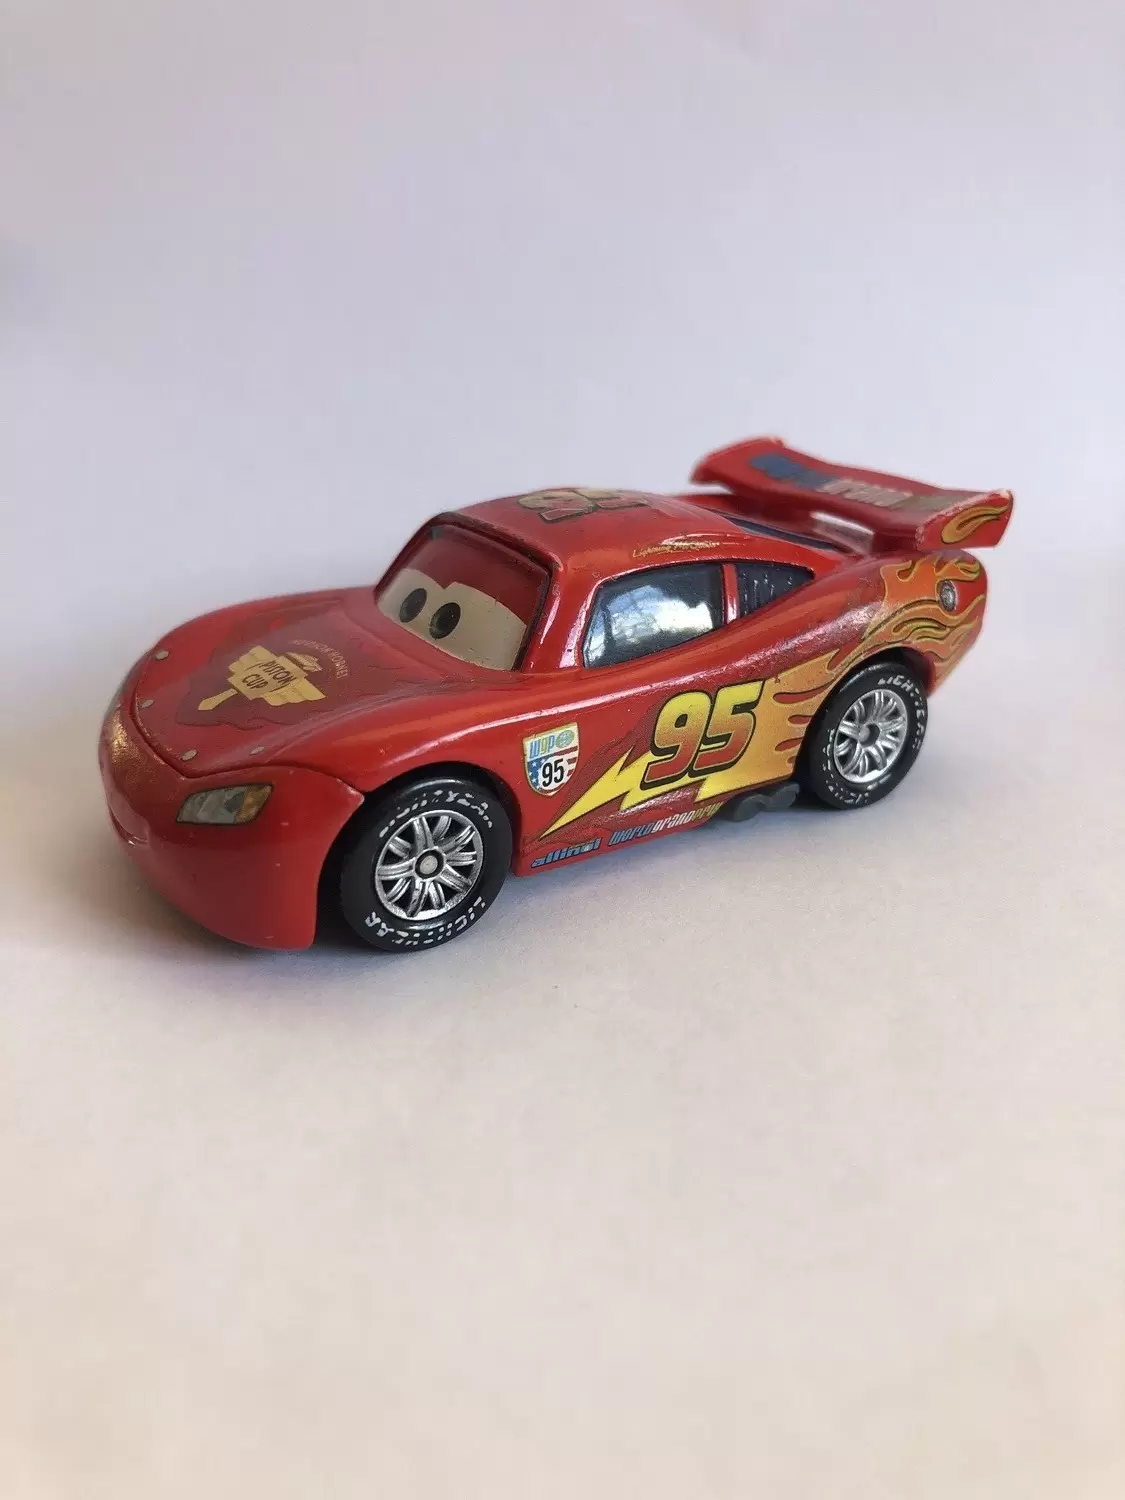 Cars 2 models - Flash McQueen (Lightning McQueen) Variante